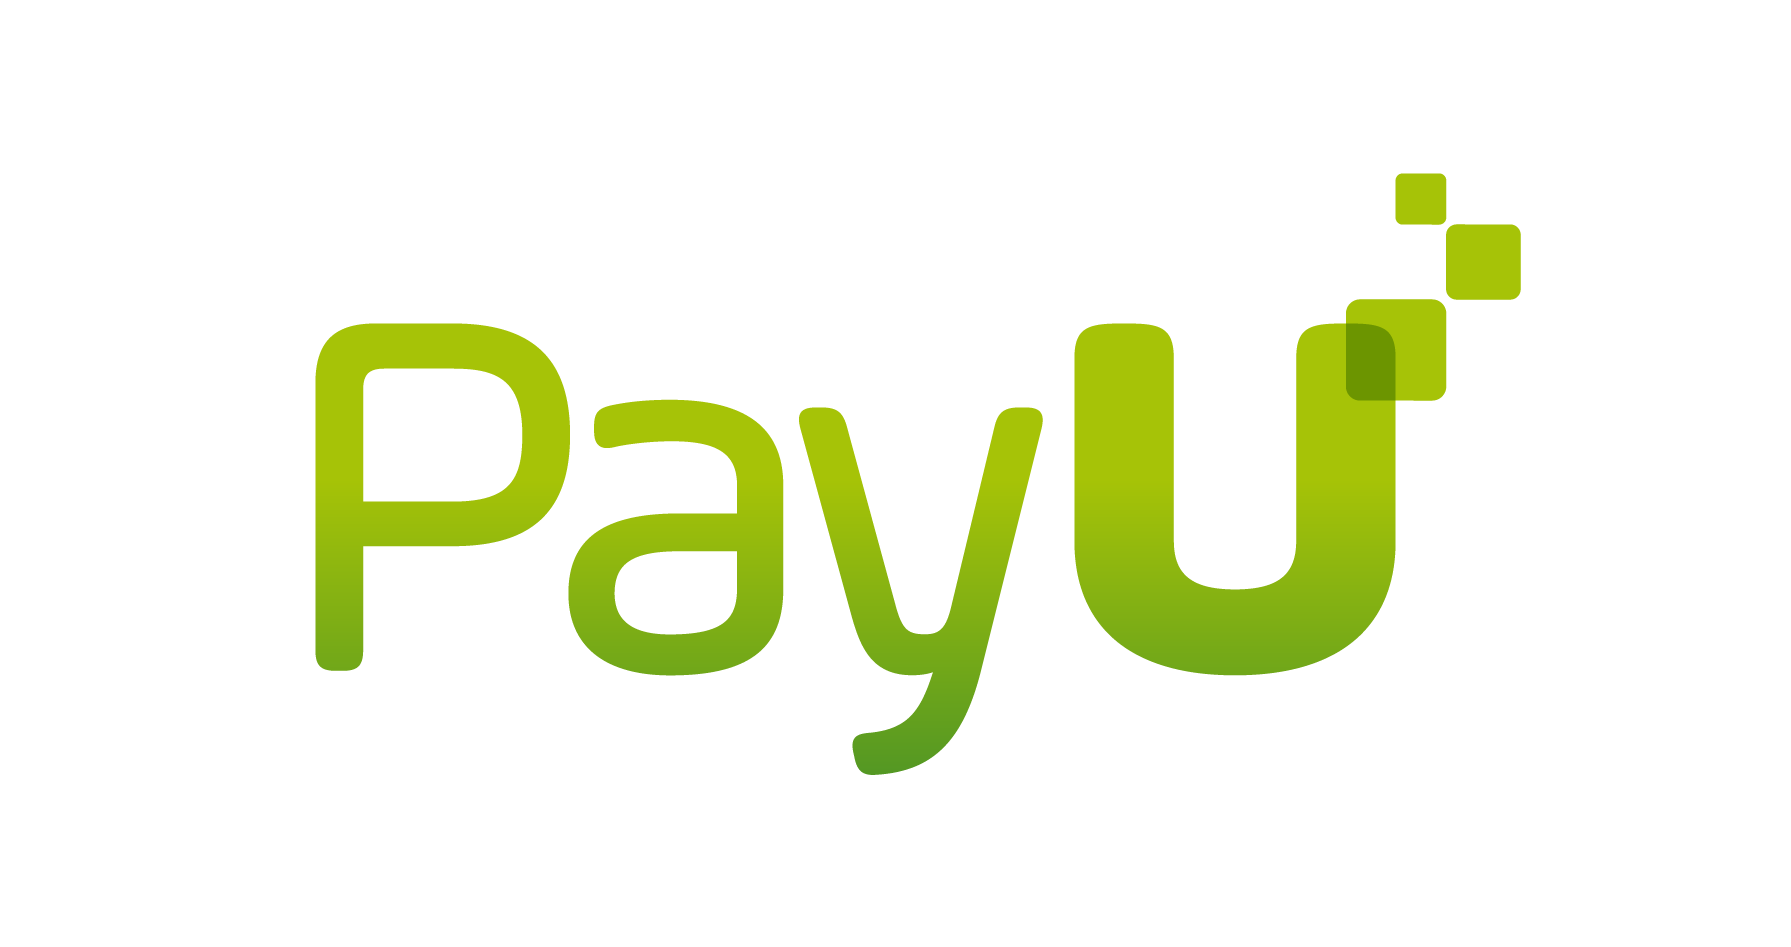 zielone logo payU metoda płatności